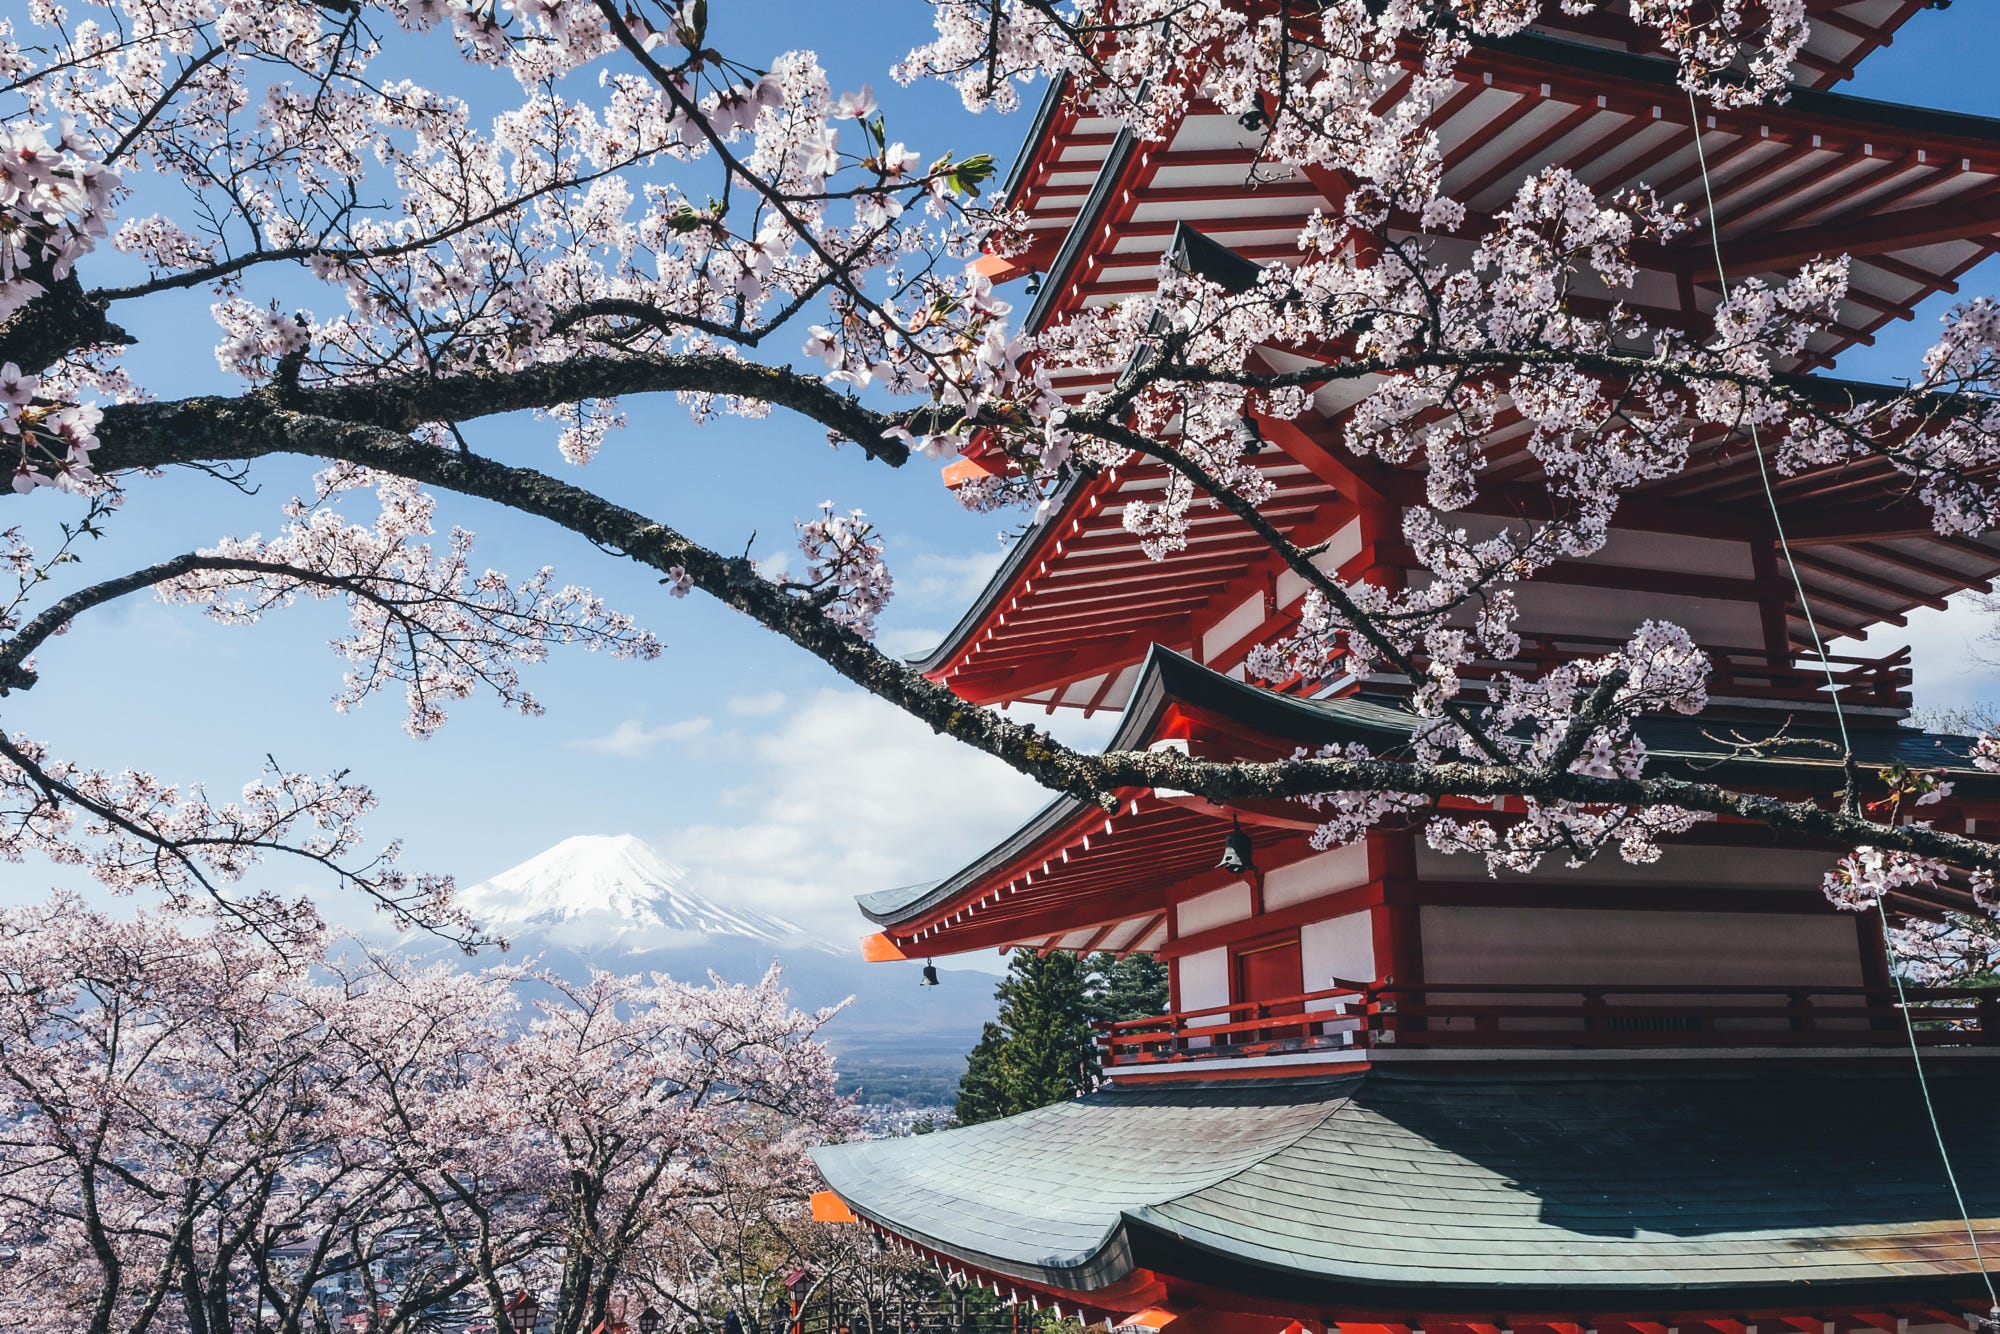 Япония гора Фудзи храм